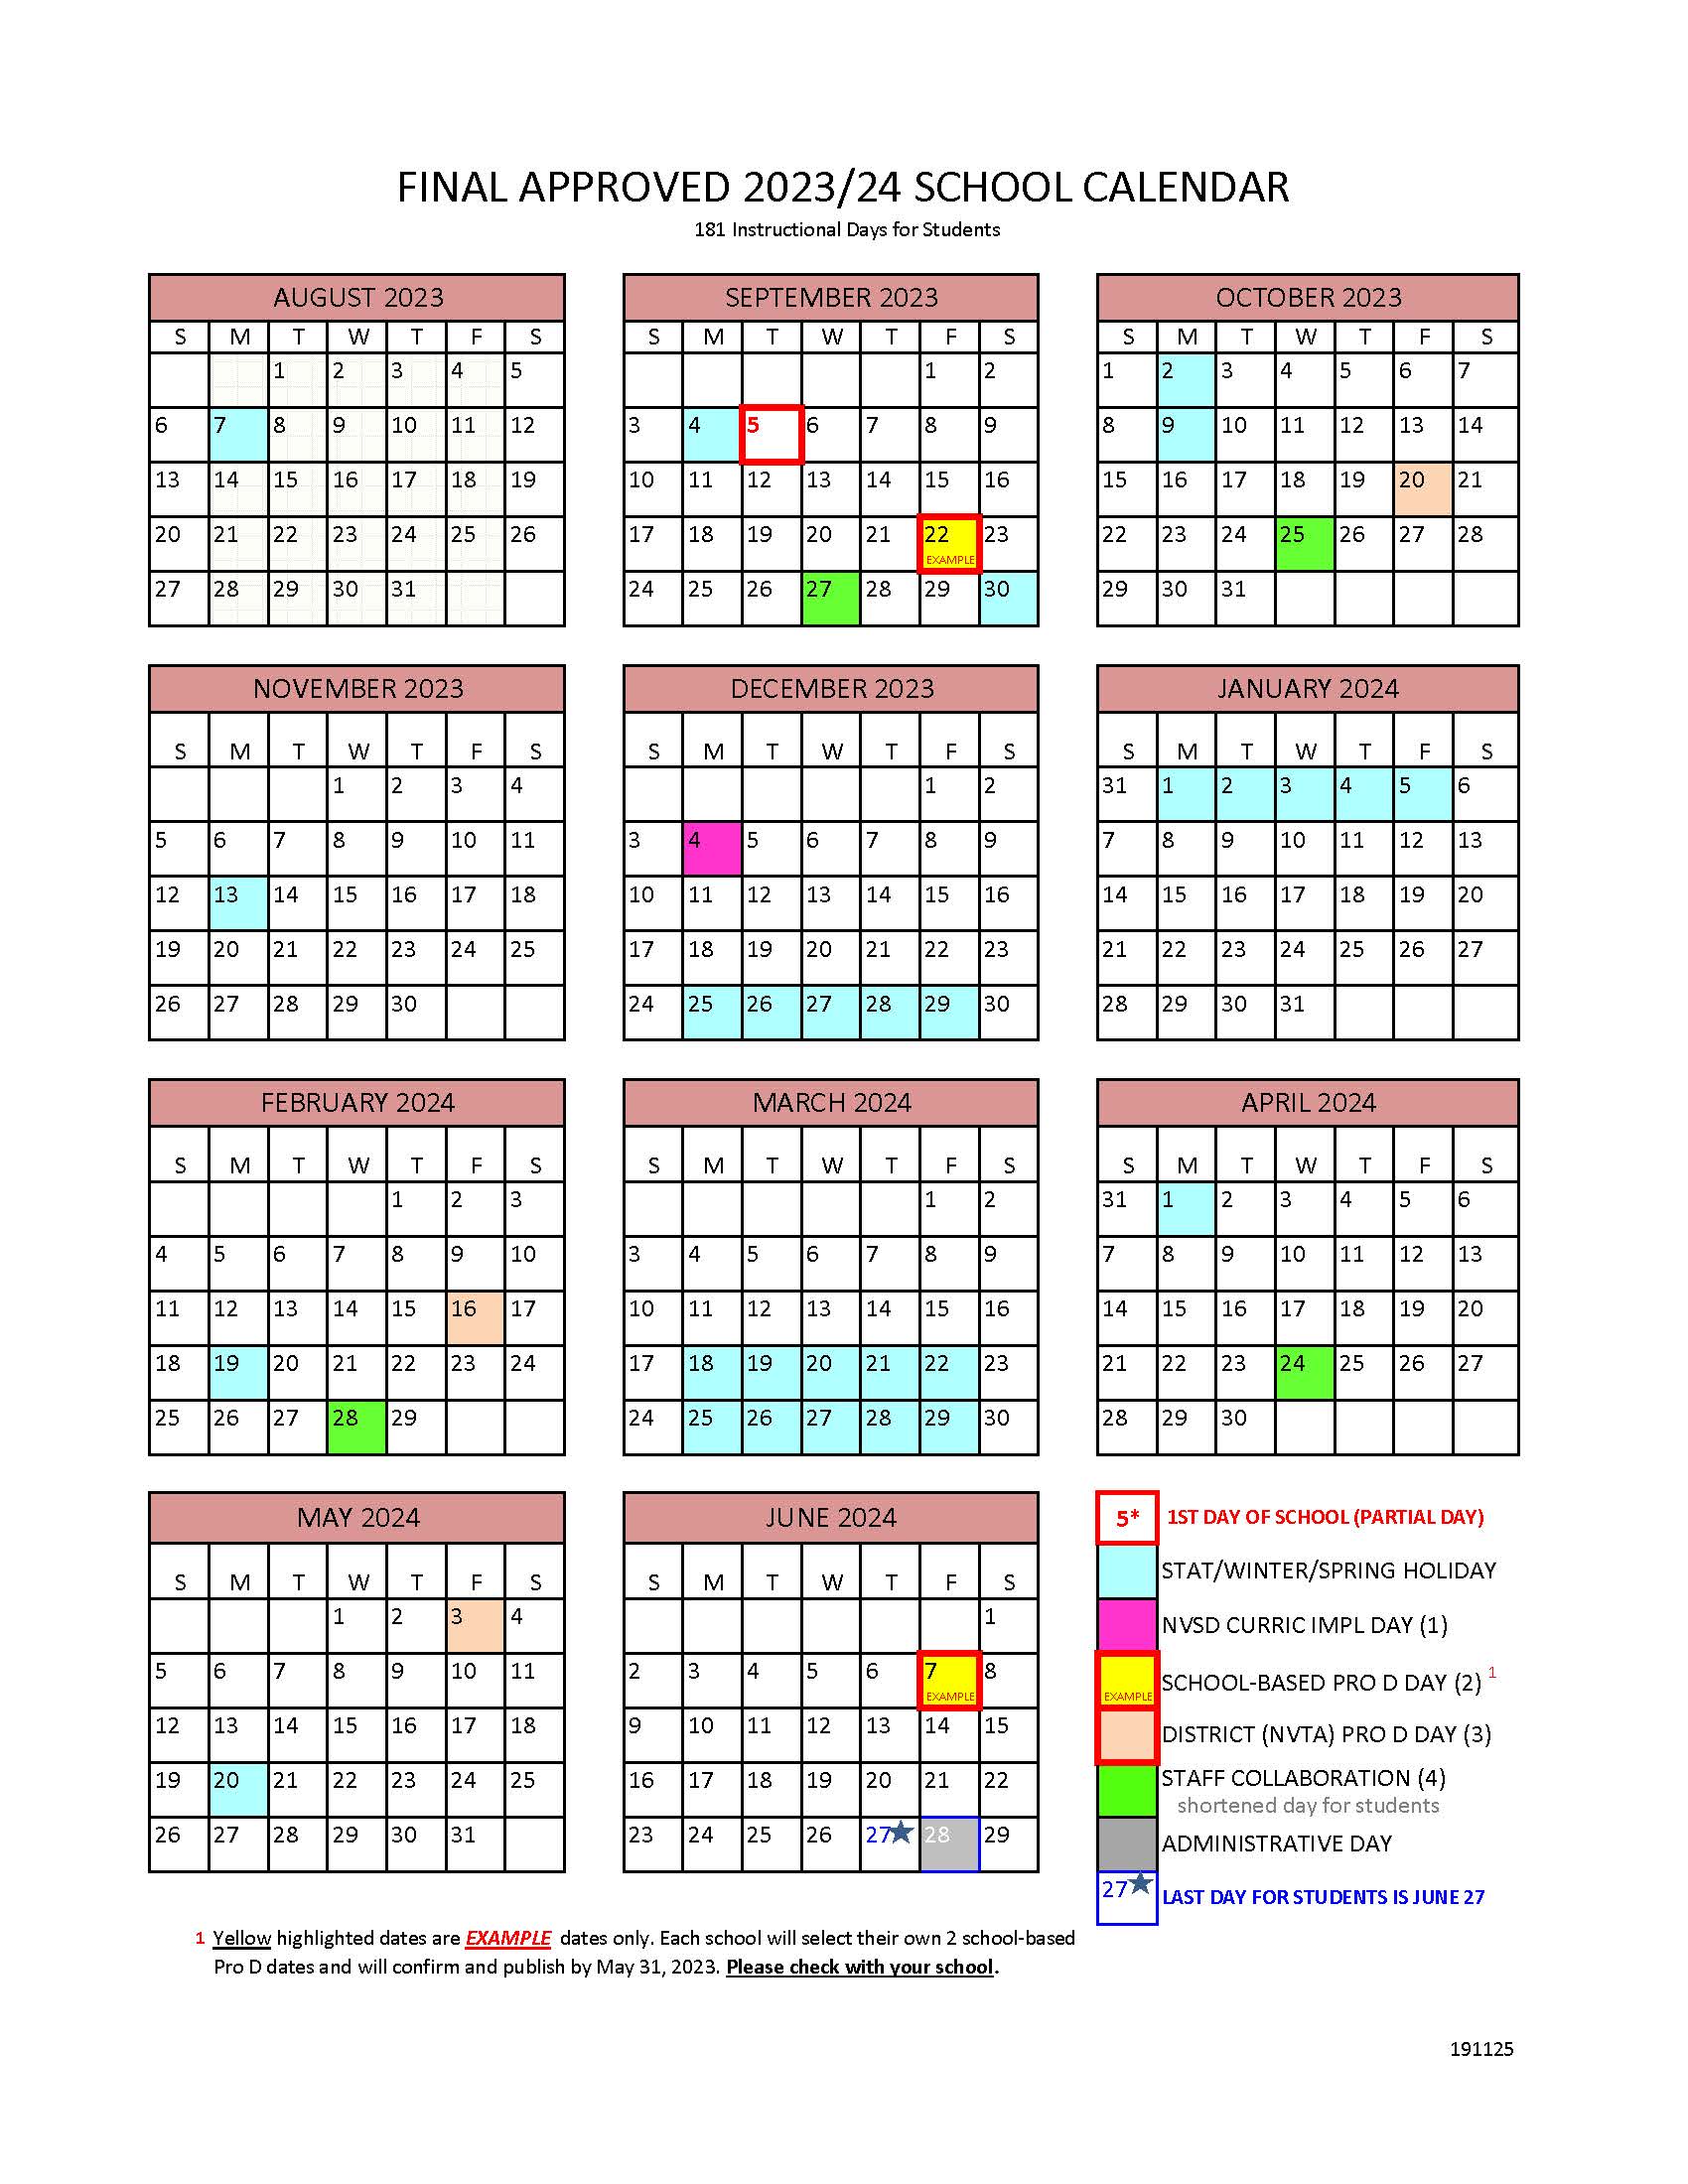 23-24 FINAL Approved School Calendar.jpg